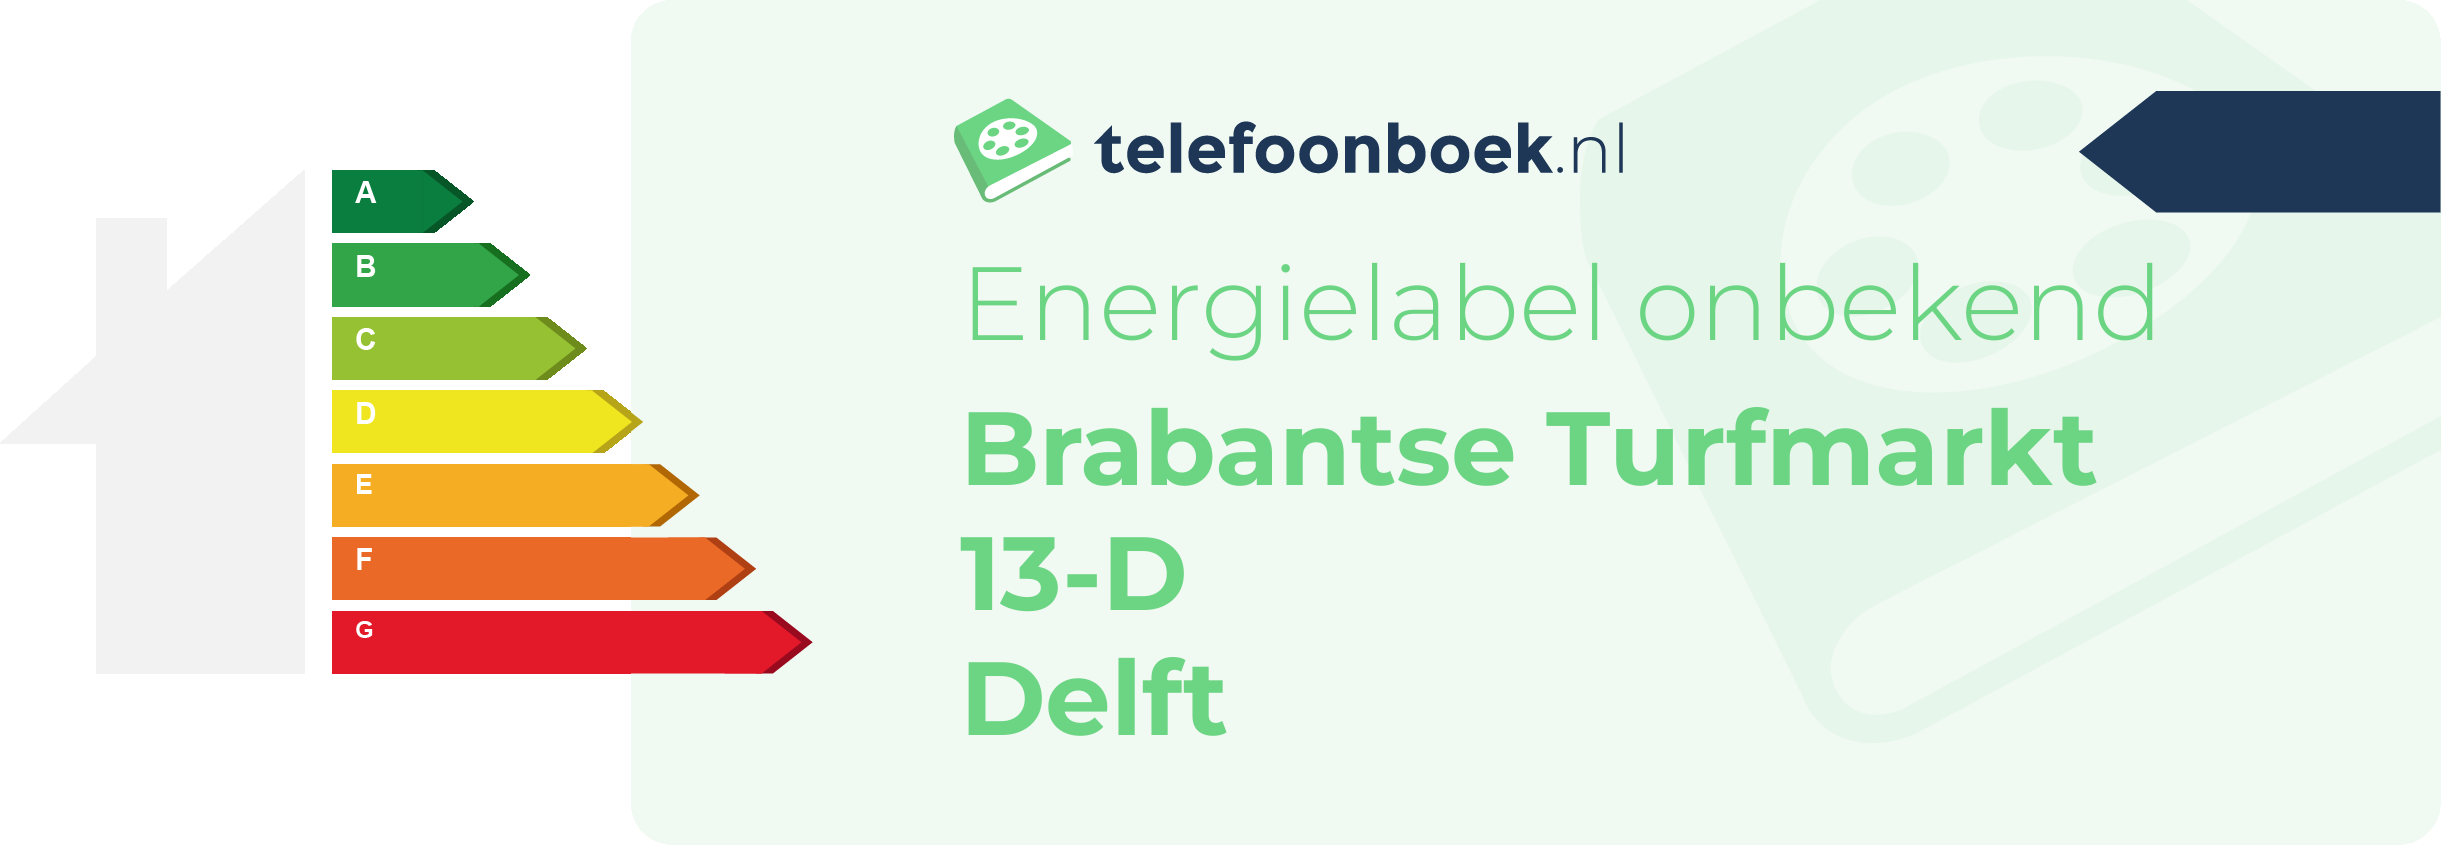 Energielabel Brabantse Turfmarkt 13-D Delft